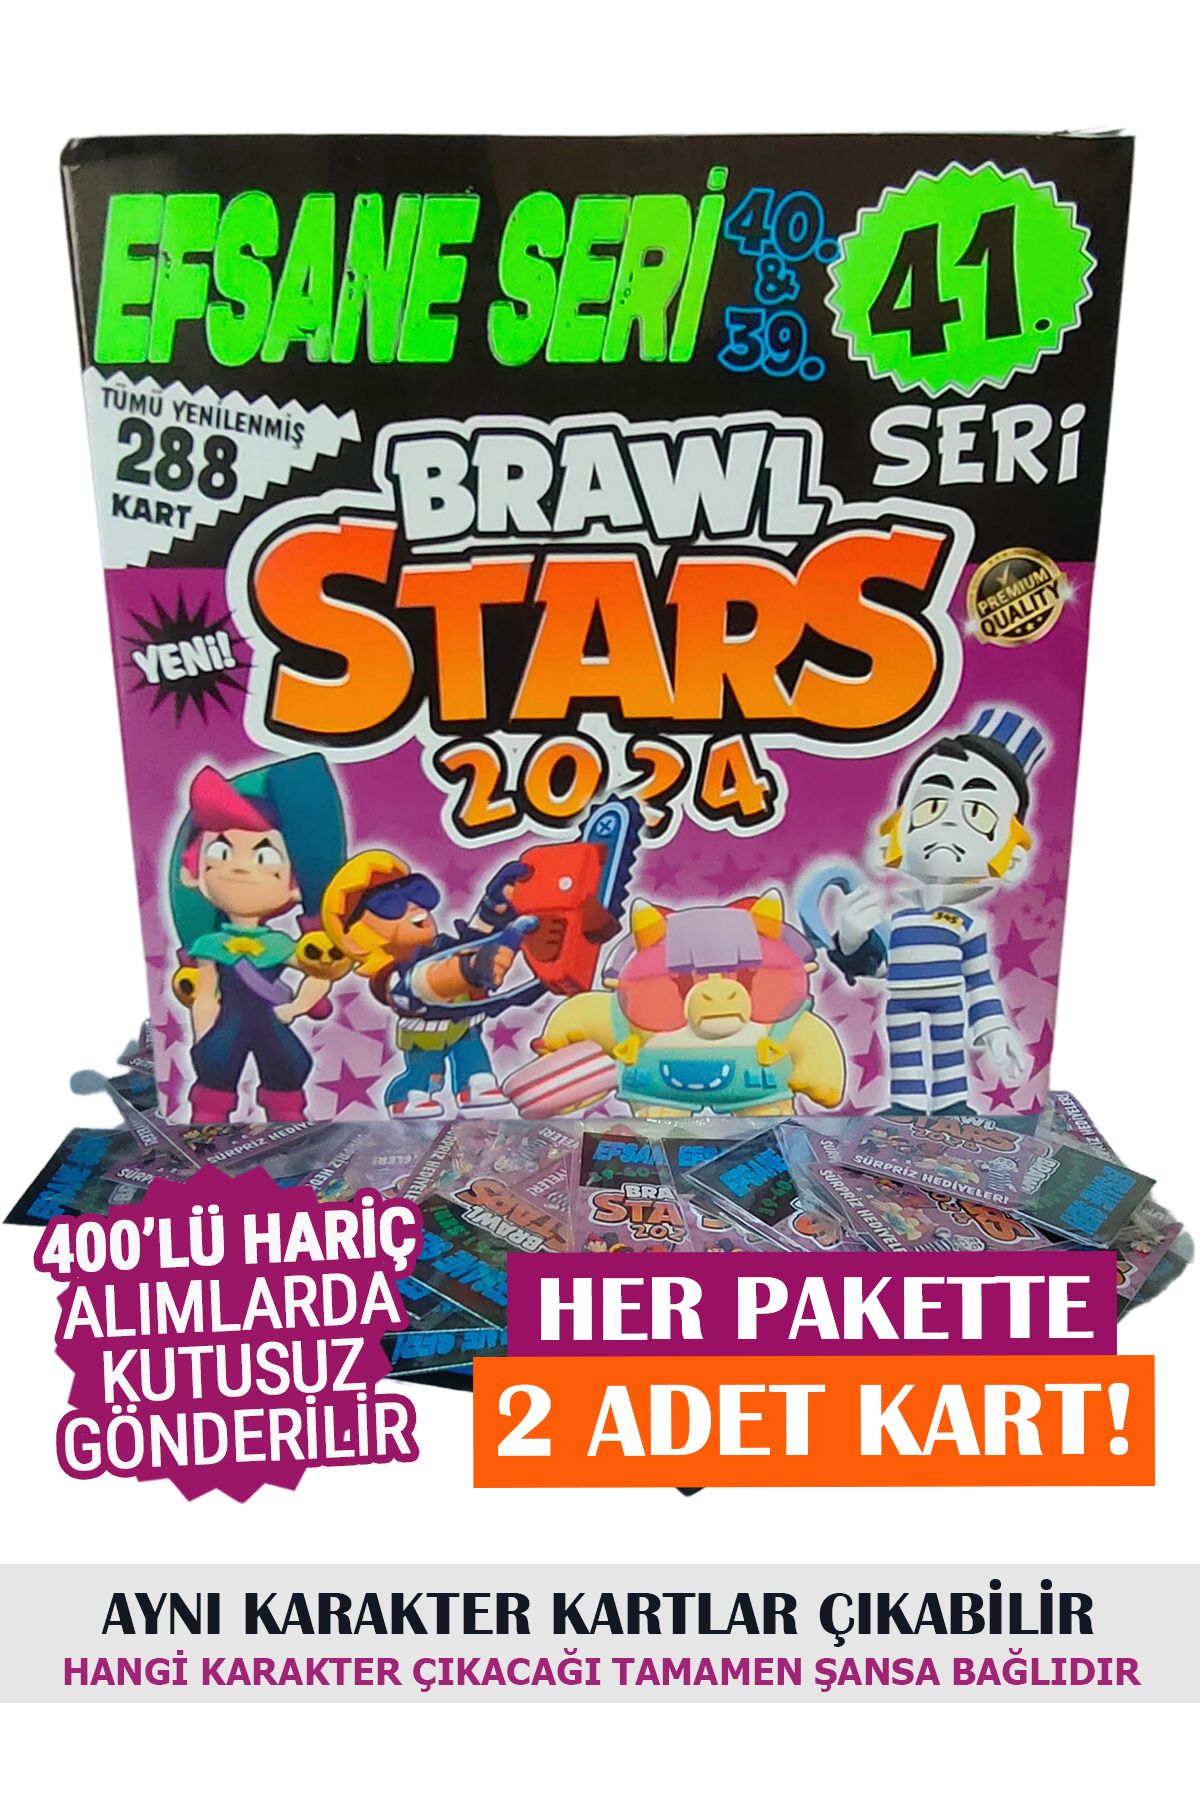 BRAWL STARS 2023 Efsane Seri Oyun Kartları 38.39.40.seriler & 200'lü Kutu